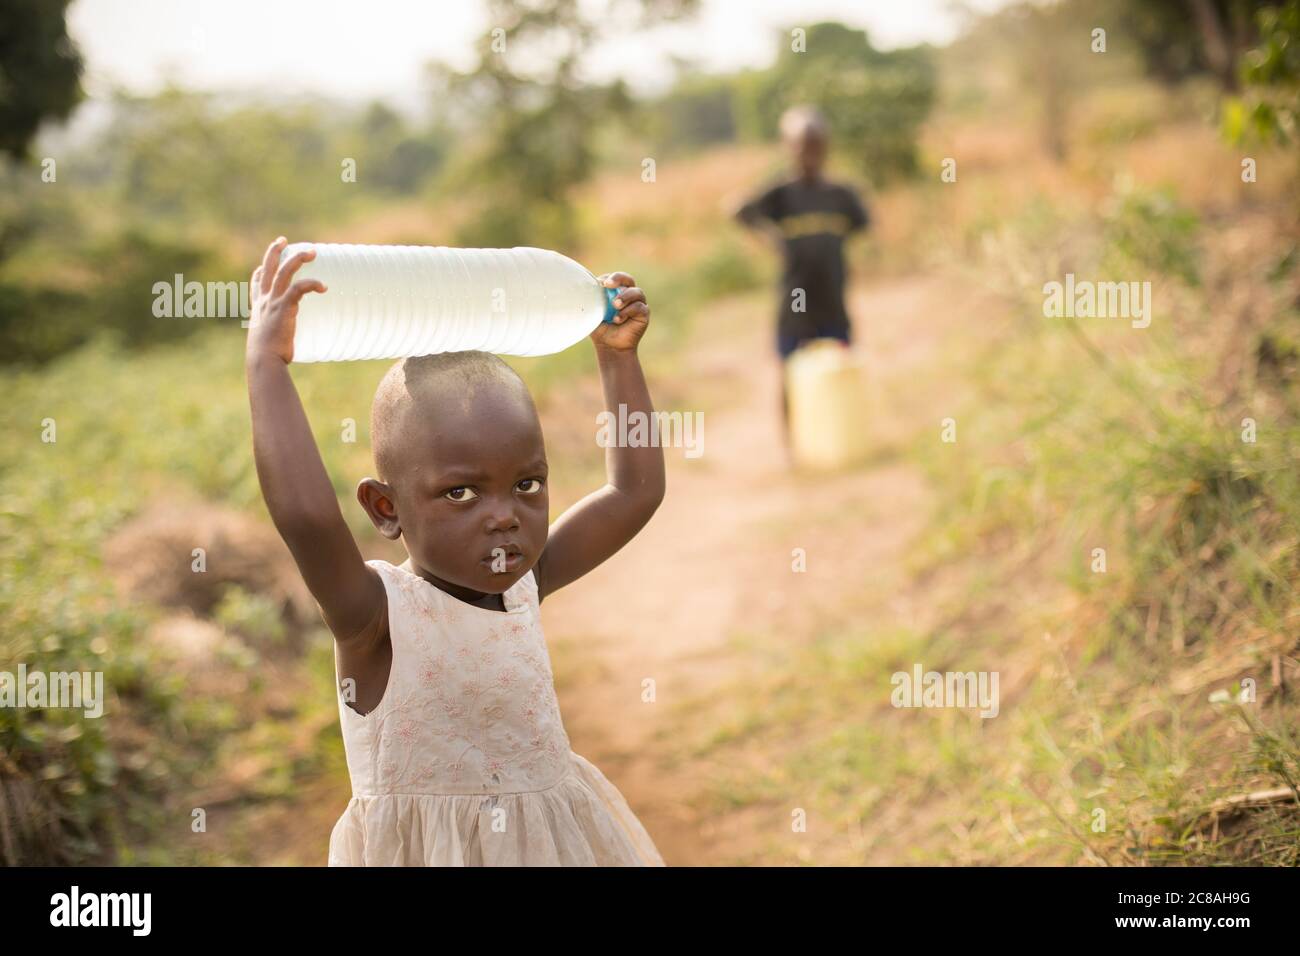 Une jeune fille de 2 ans récupère de l'eau avec son frère dans le district rural de Rakai, en Ouganda, en Afrique de l'est. Banque D'Images